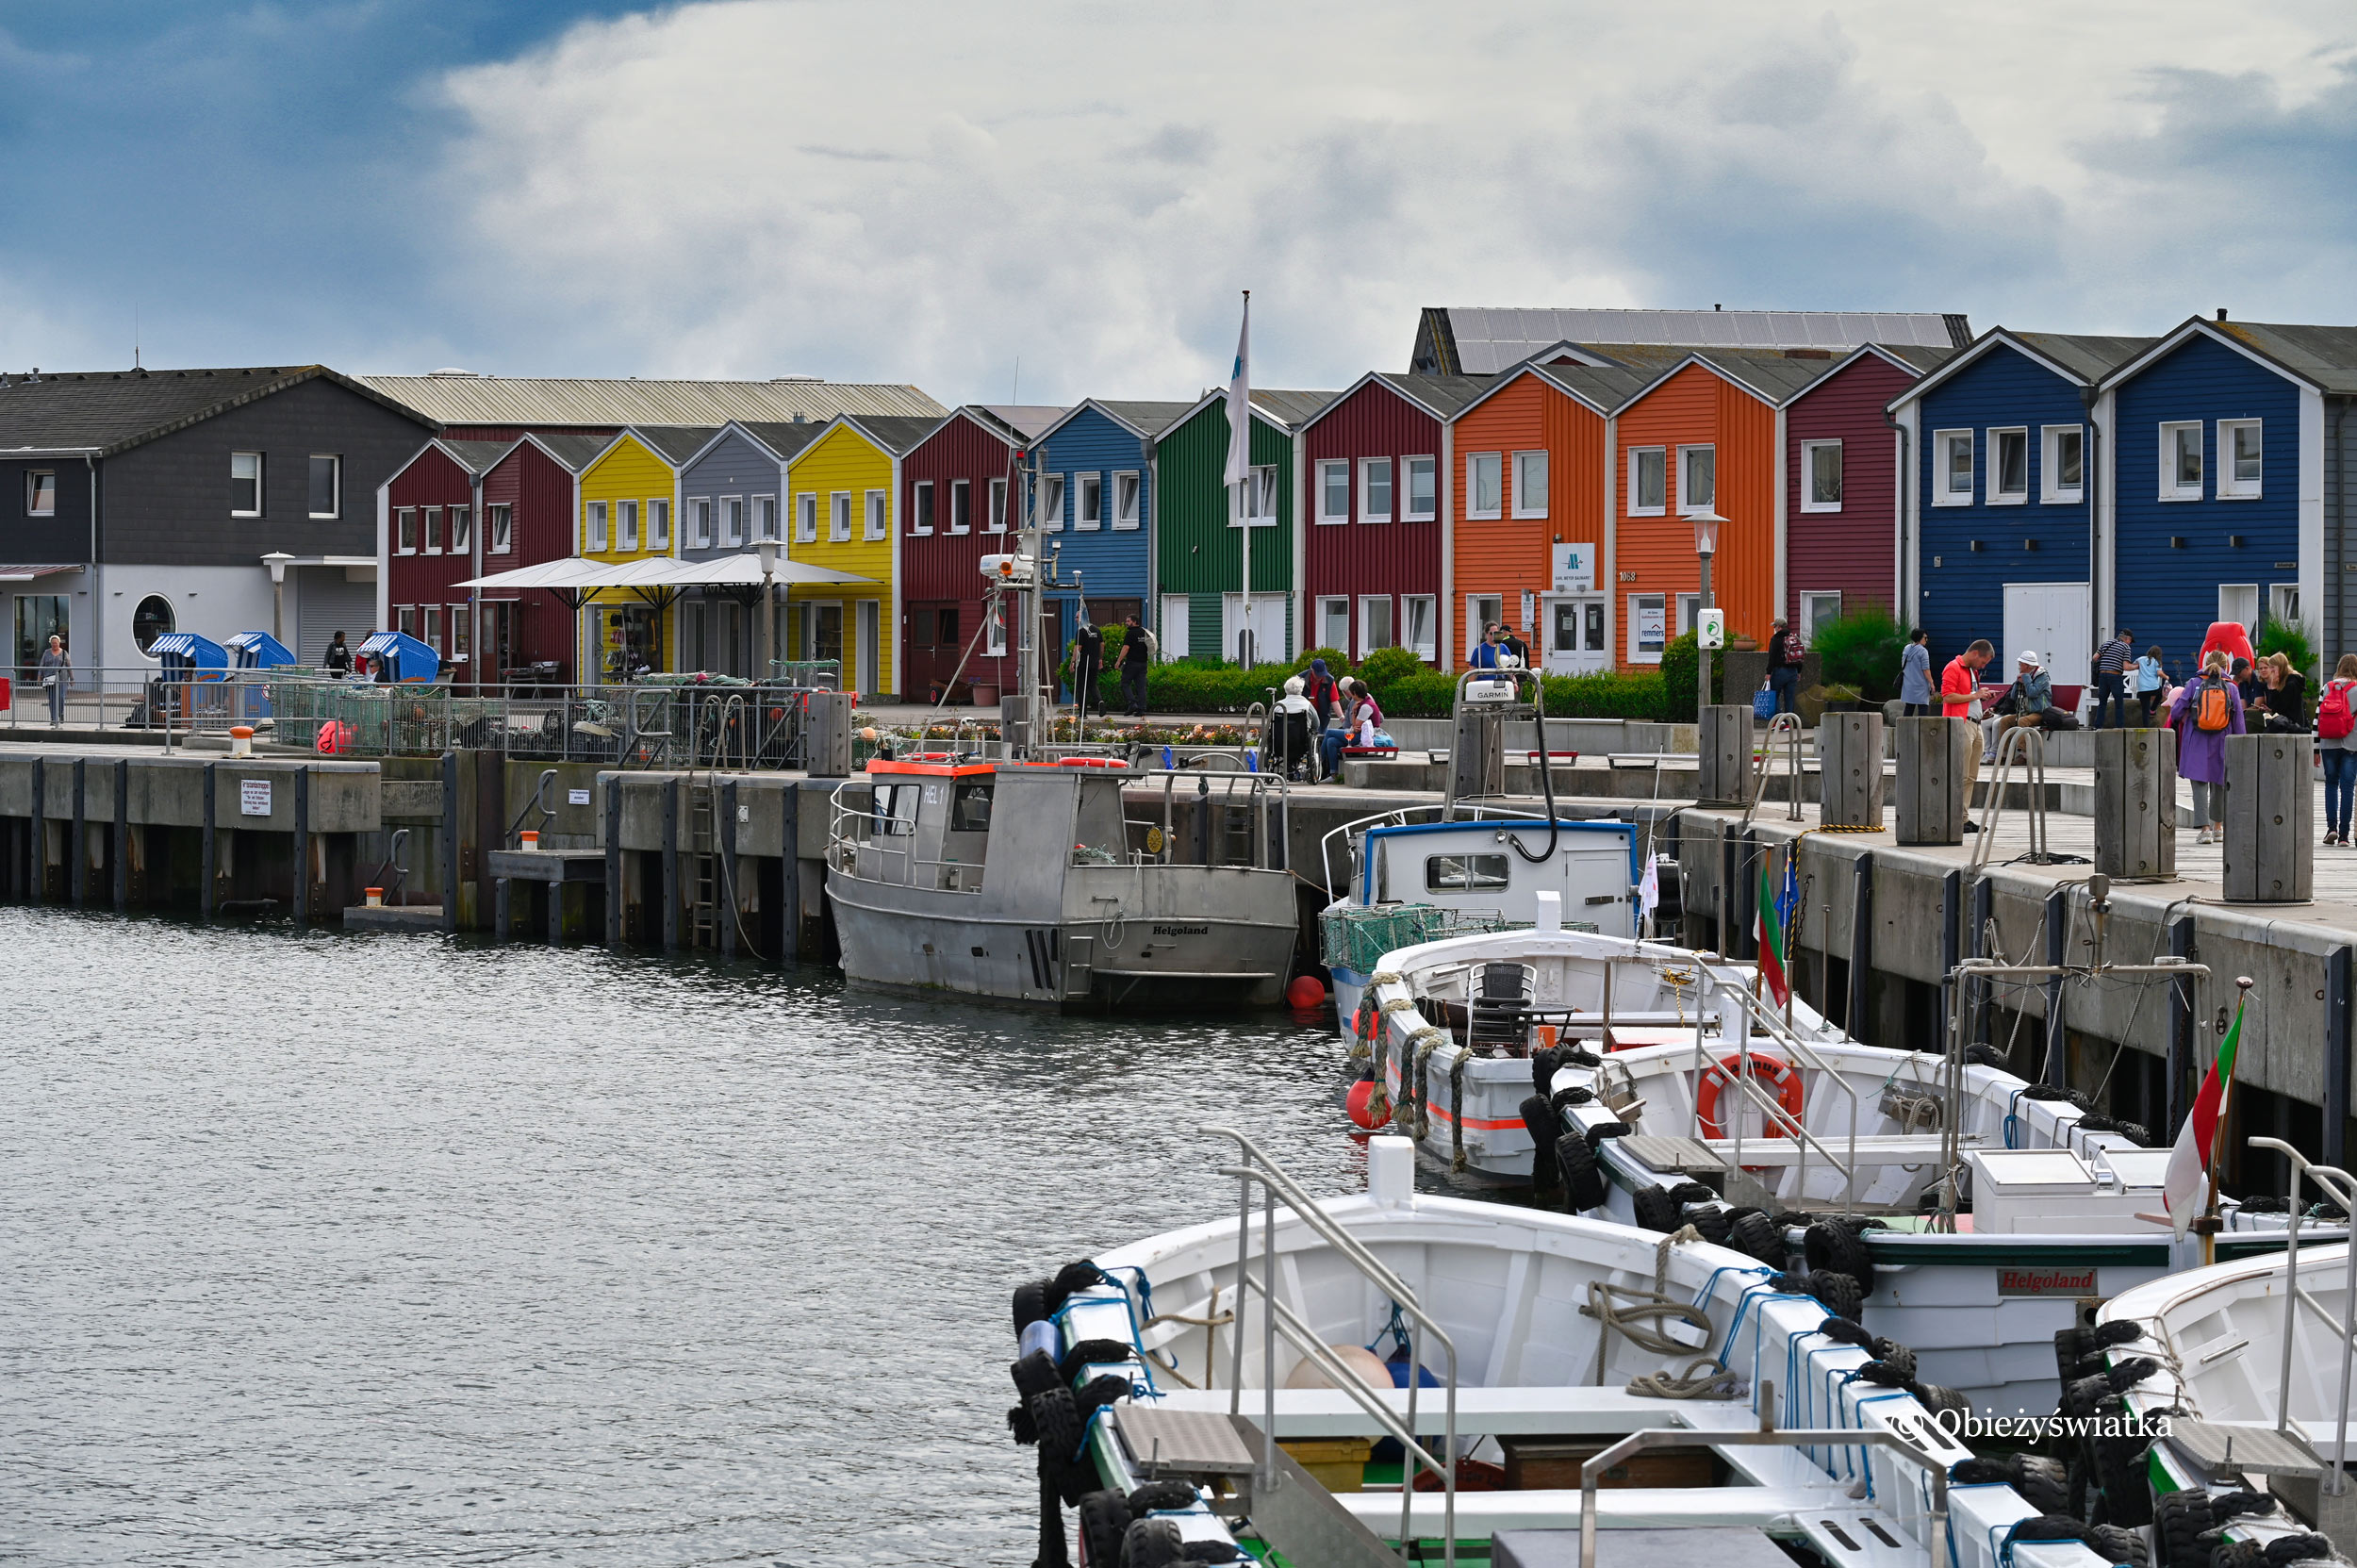 Przystań i Hummerbuden, czyli kolorowe chatki stylizowane na chaty rybaków, Helgoland